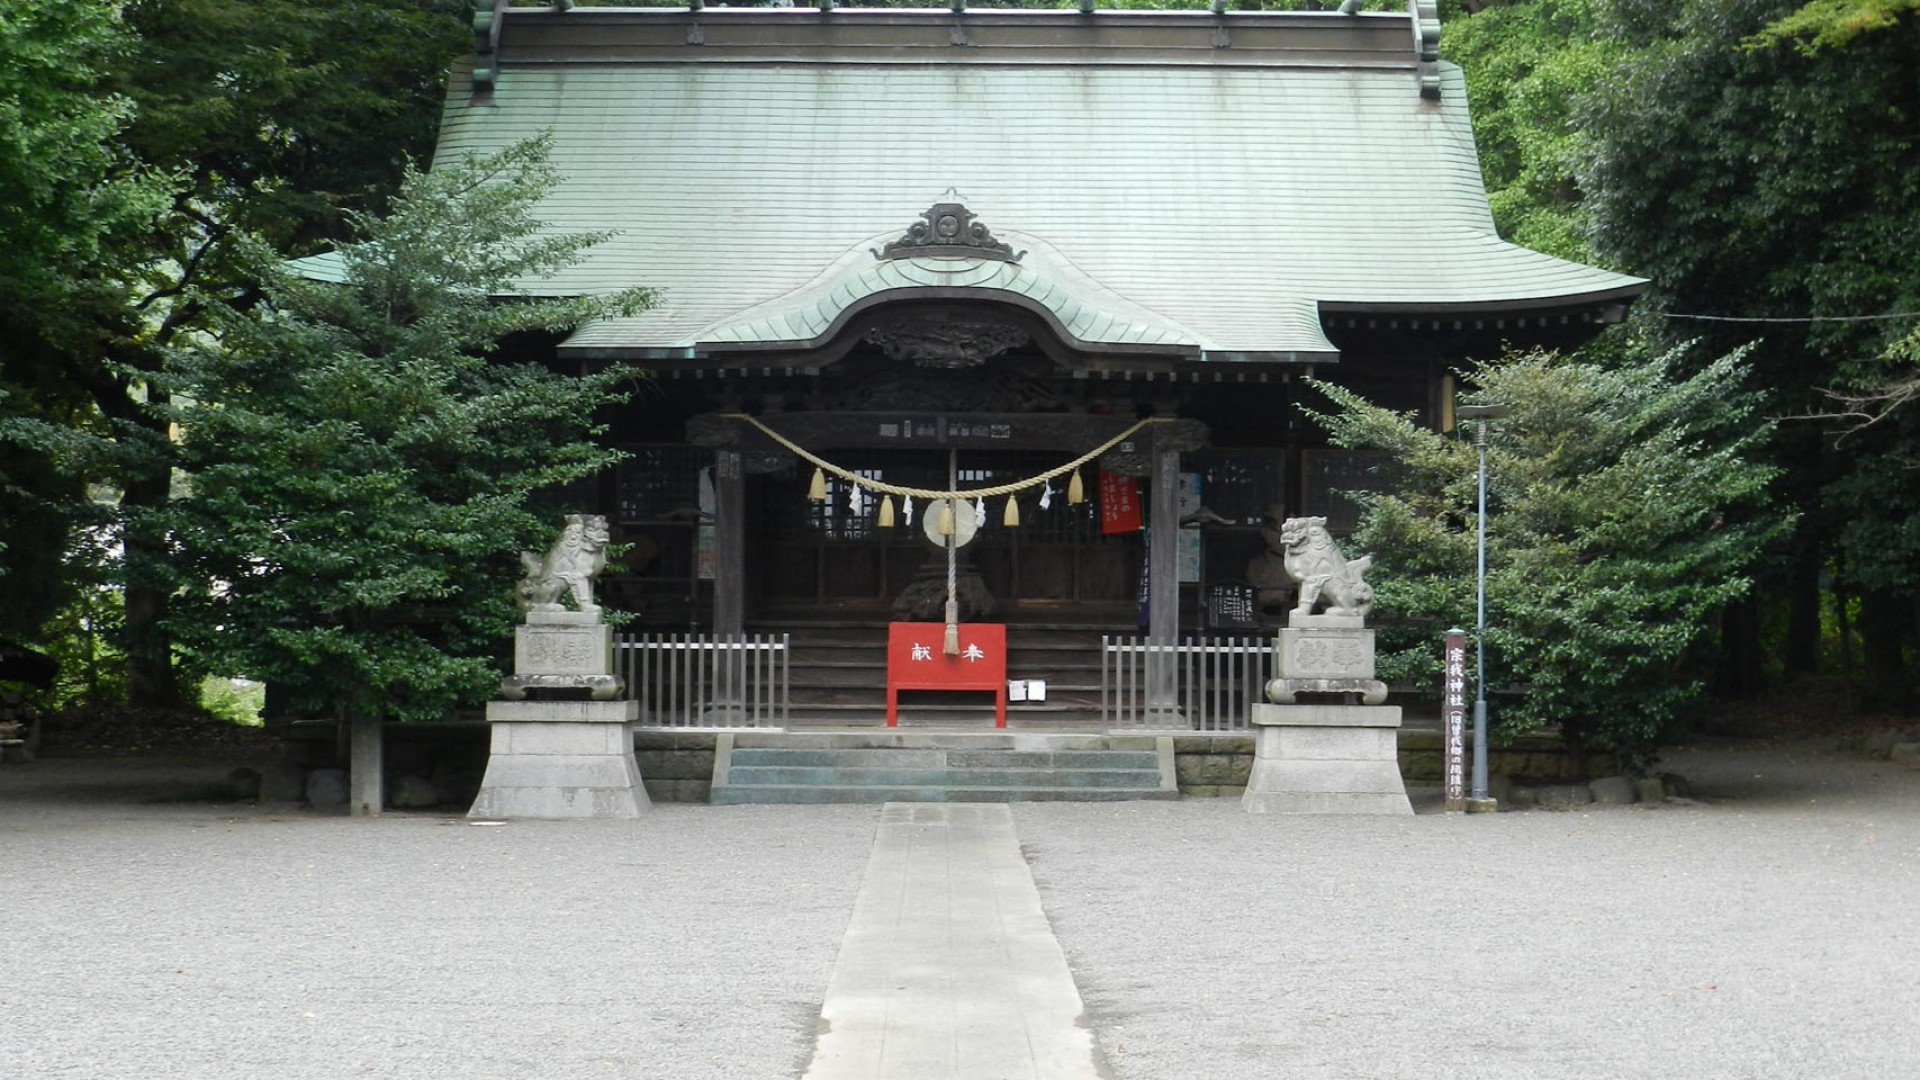 Soga Shrine